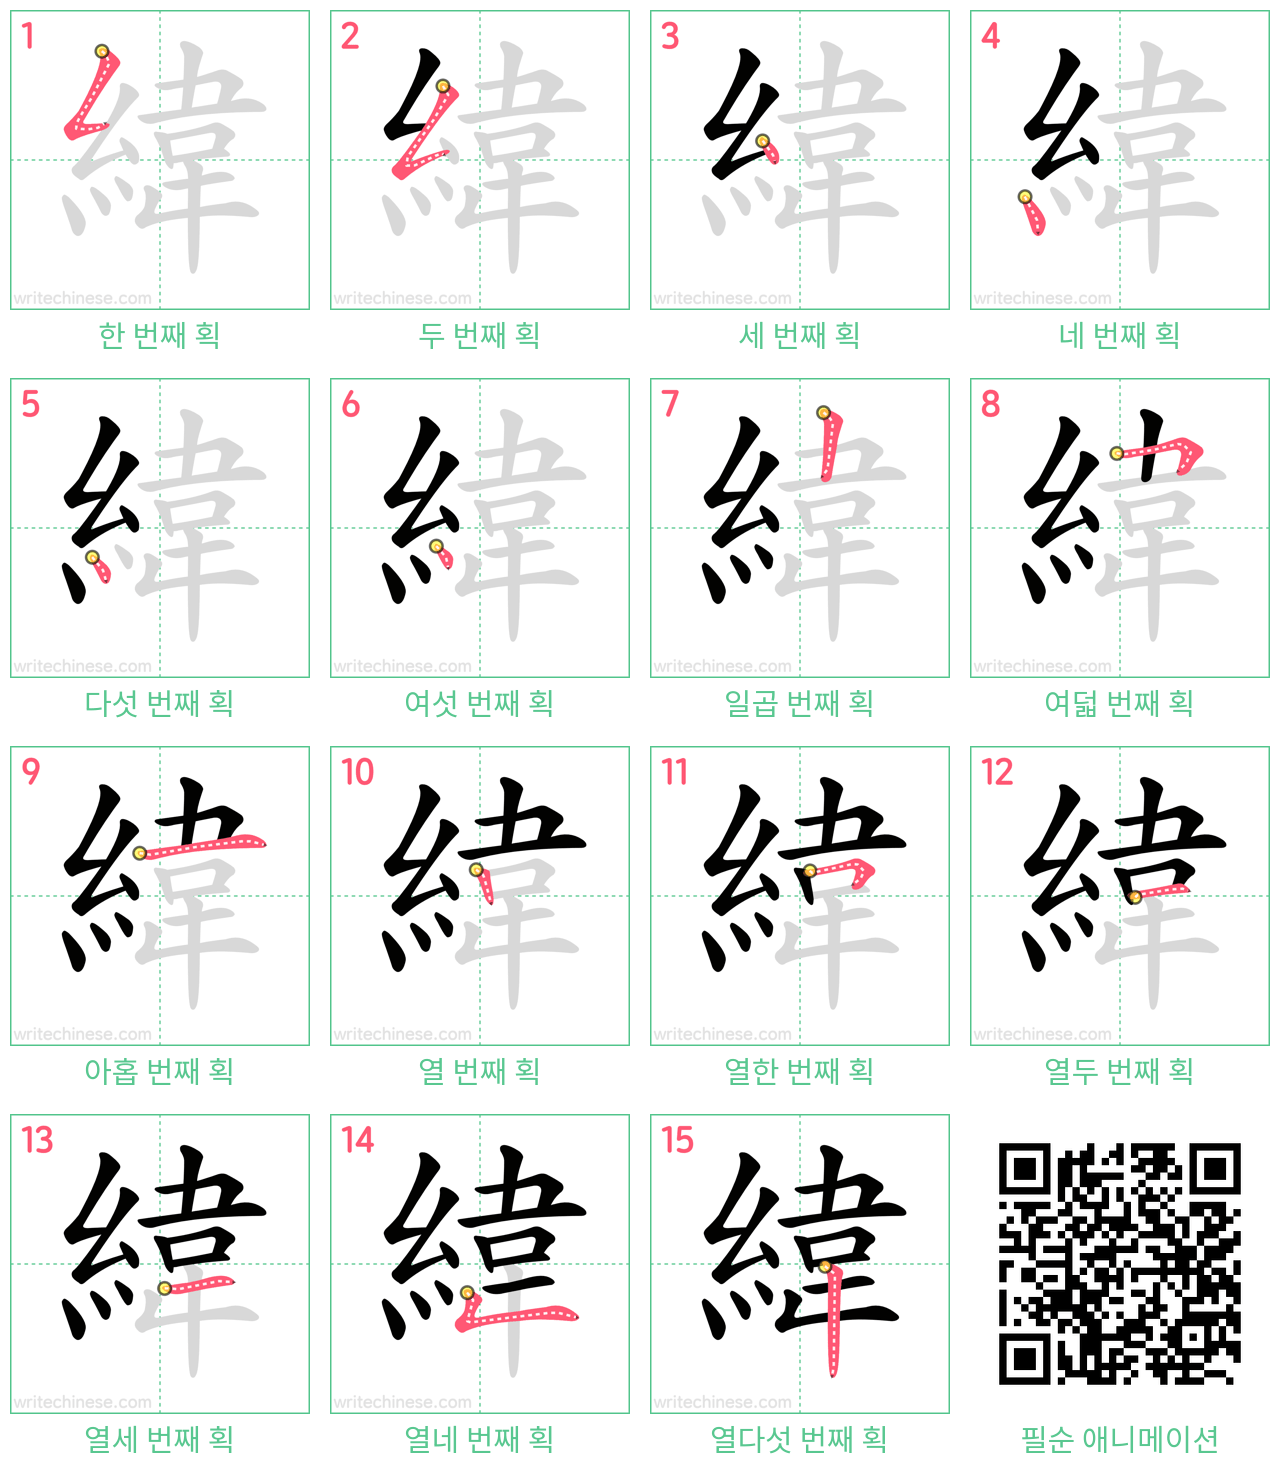 緯 step-by-step stroke order diagrams